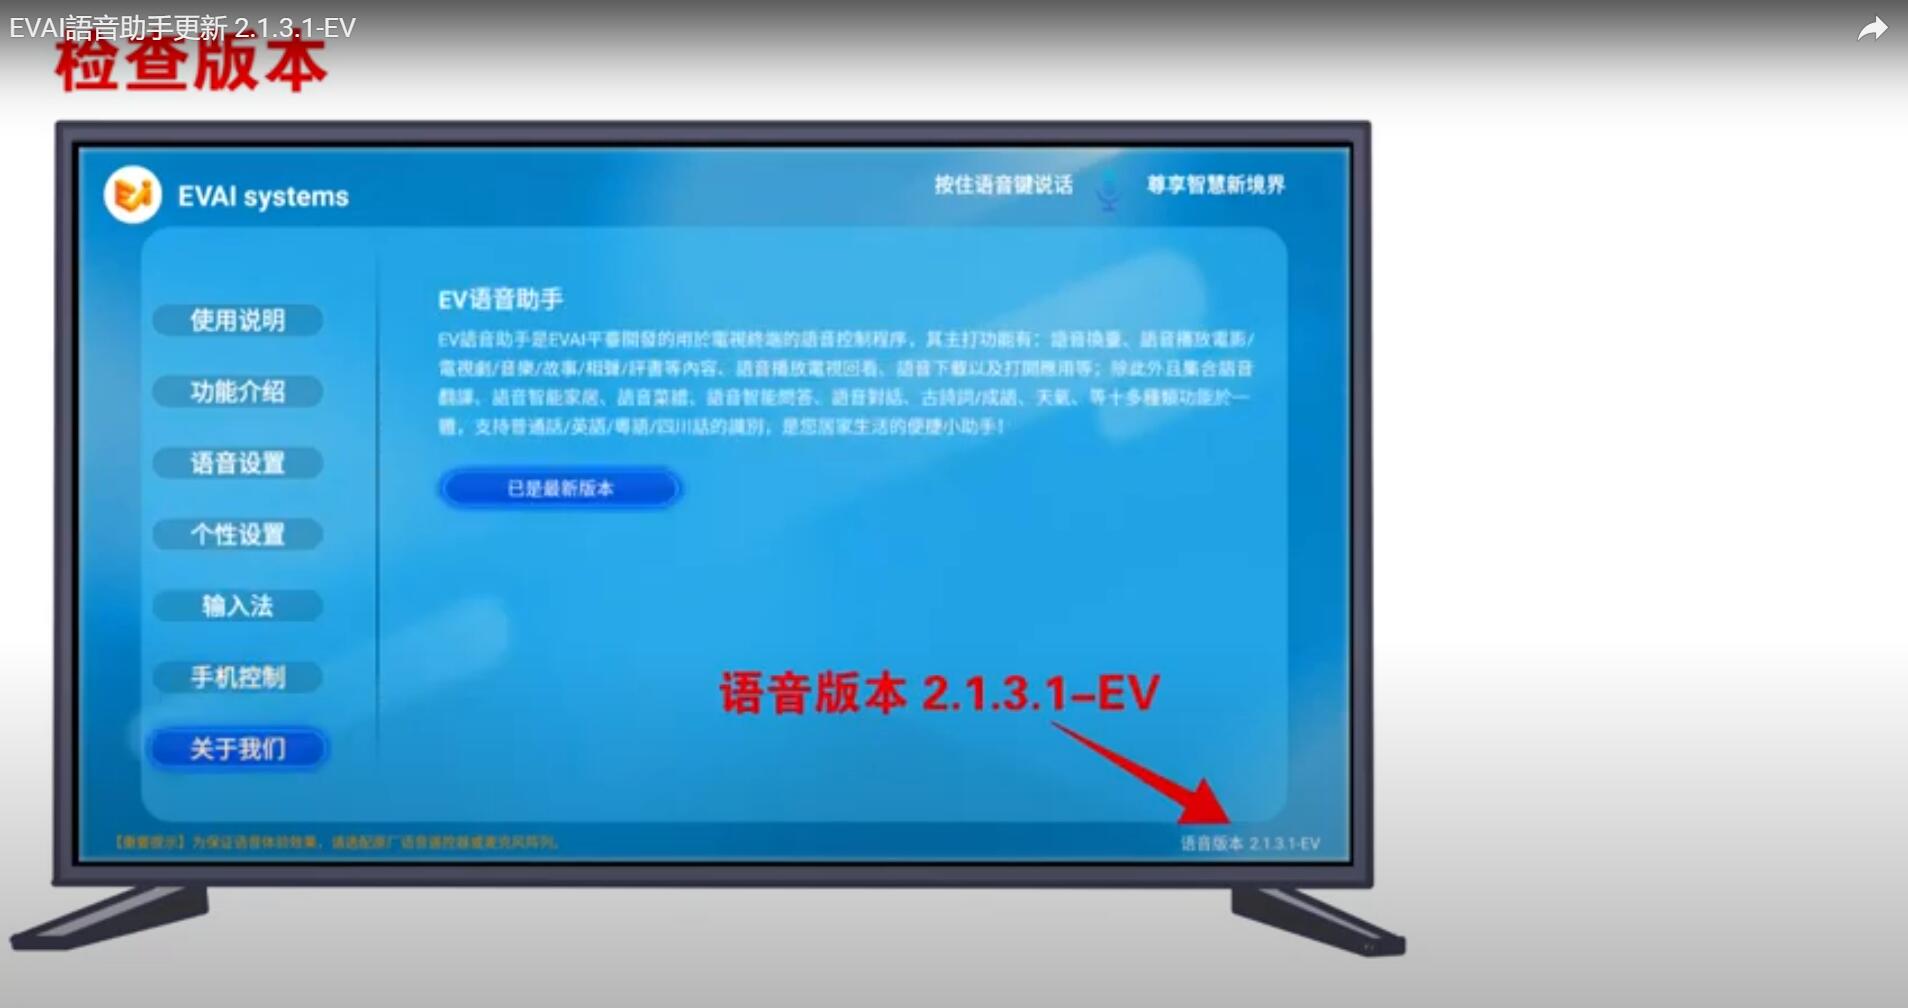 EVPAD TV Box EVAI 음성 도우미 업데이트